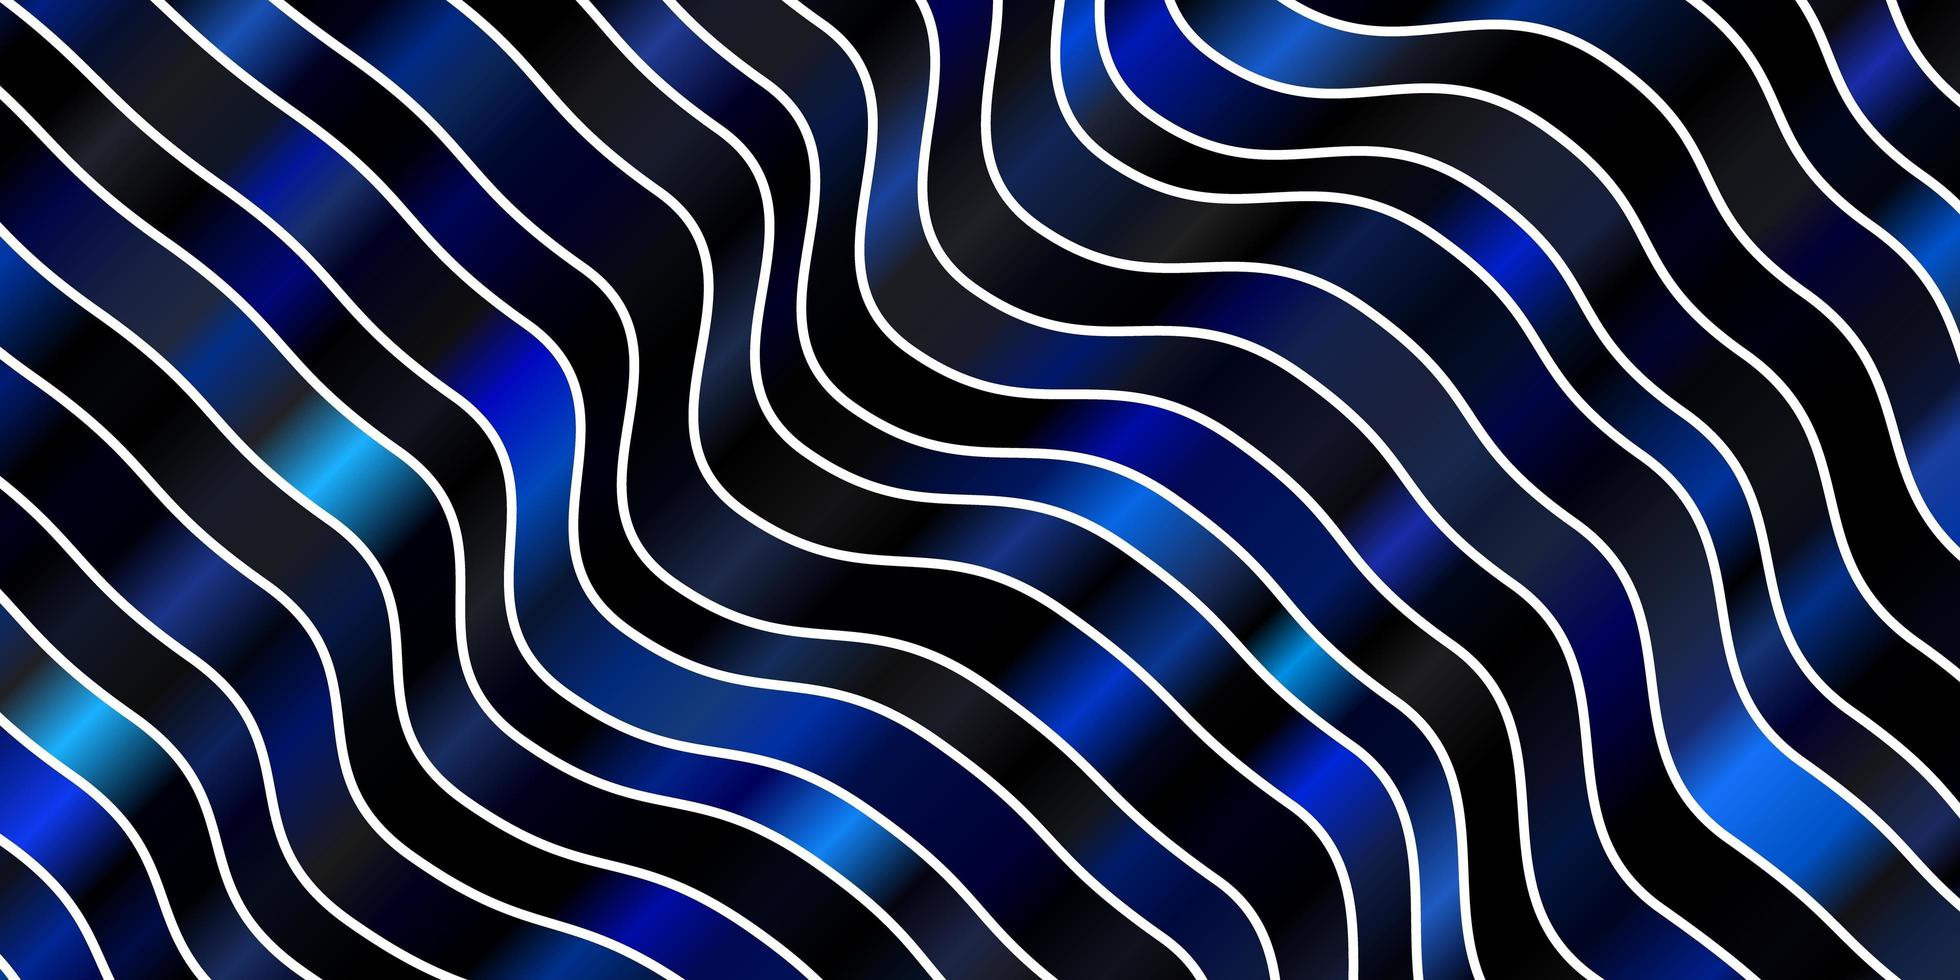 textura de vector azul oscuro con arco circular. Ilustración de estilo abstracto con degradado curvo. diseño para la promoción de su negocio.